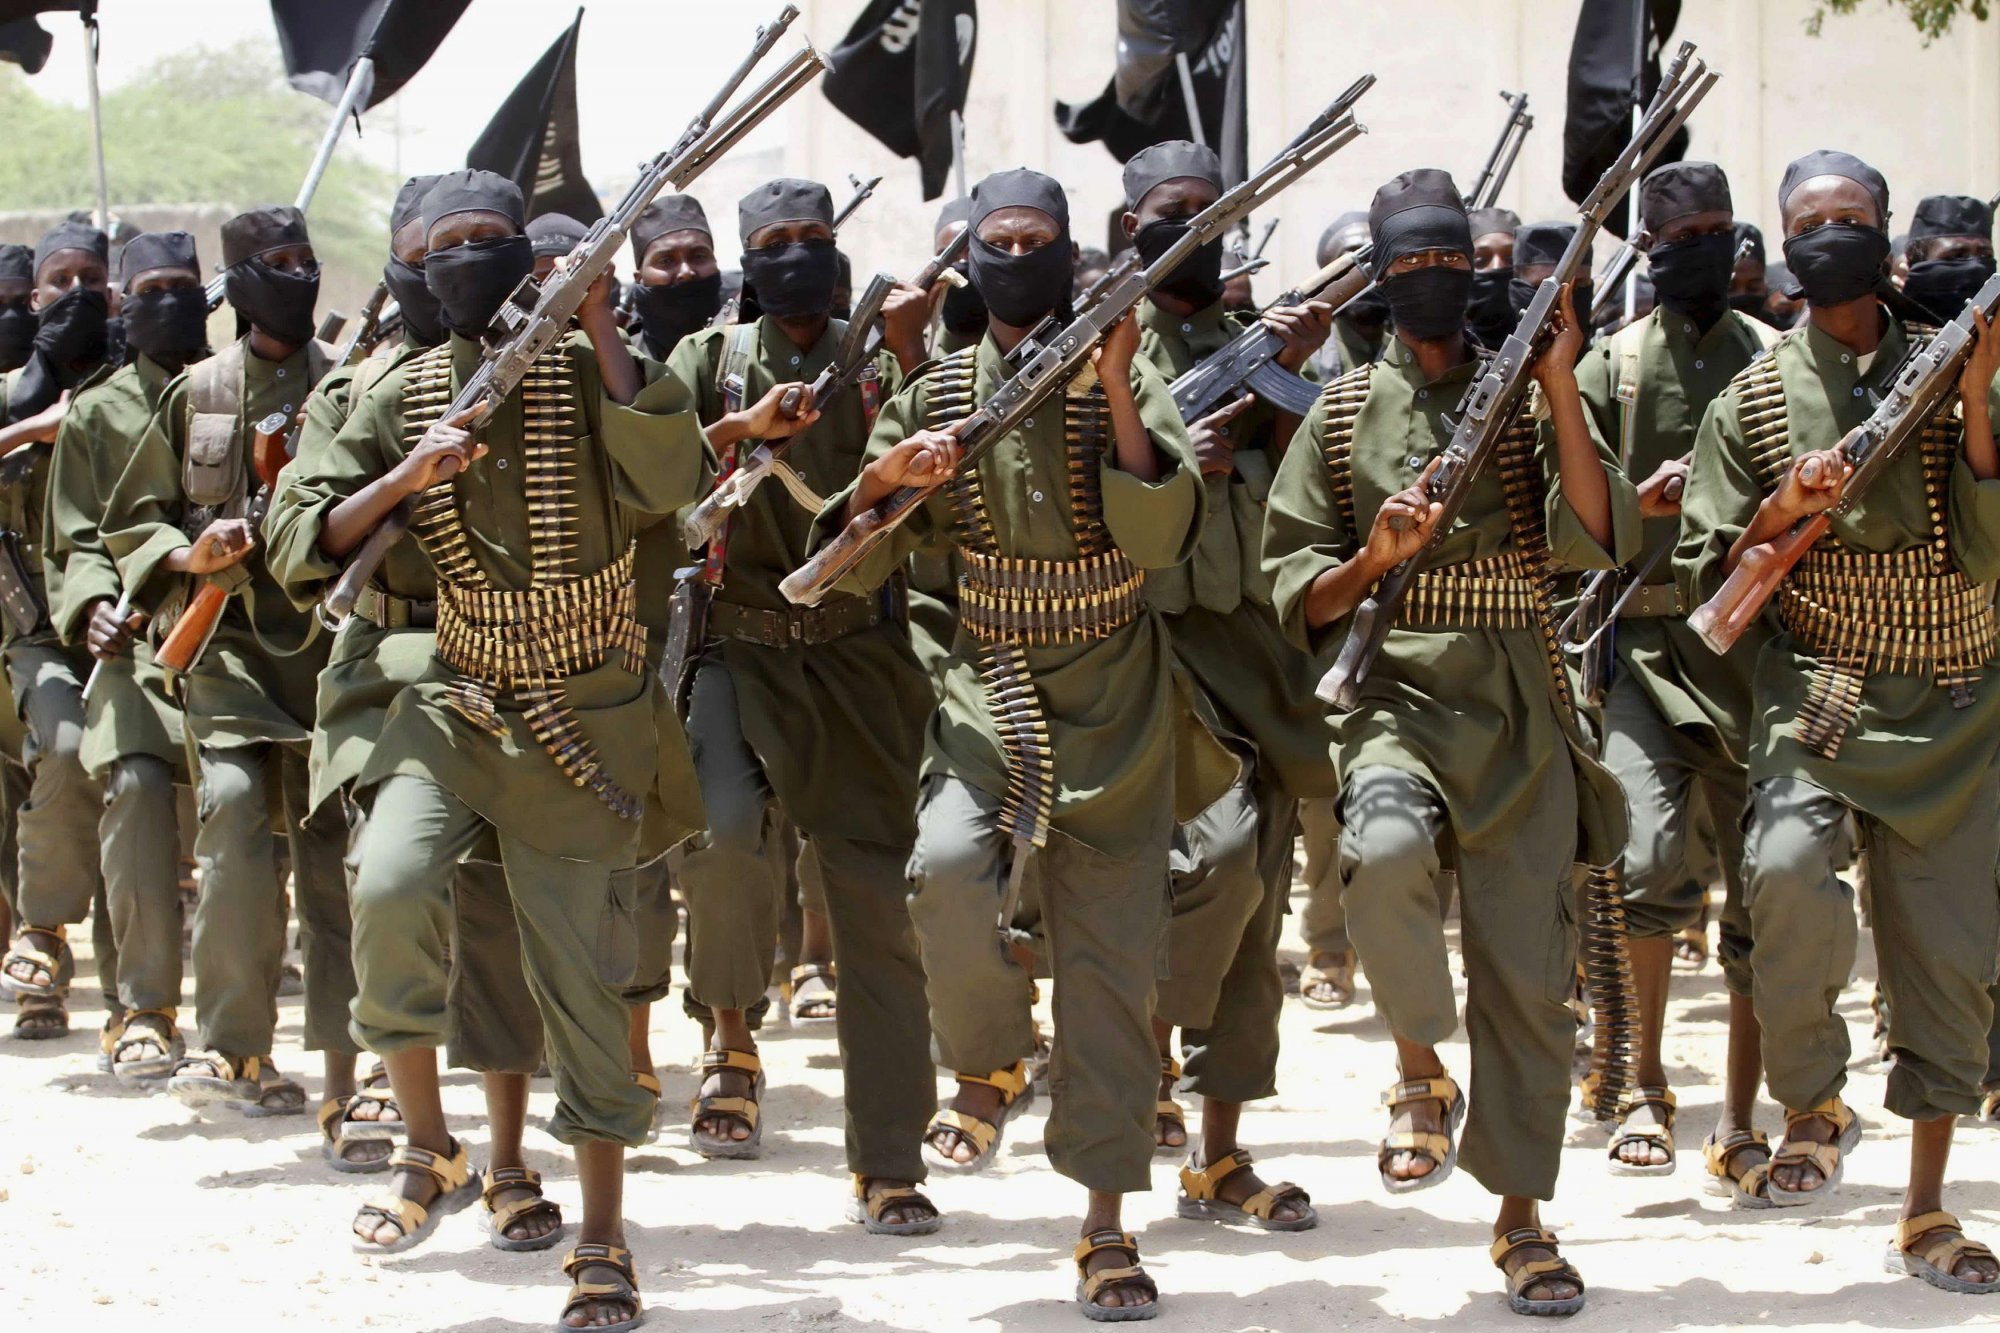 <p>Радикальная исламистская группировка «Боко Харам», которая уже несколько лет совершает кровавые теракты в Нигерии, присягнула на верность террористической группировке «Исламское государство», действующей преимущественно на территориях Ирака и Сирии.</p>

<p> </p>